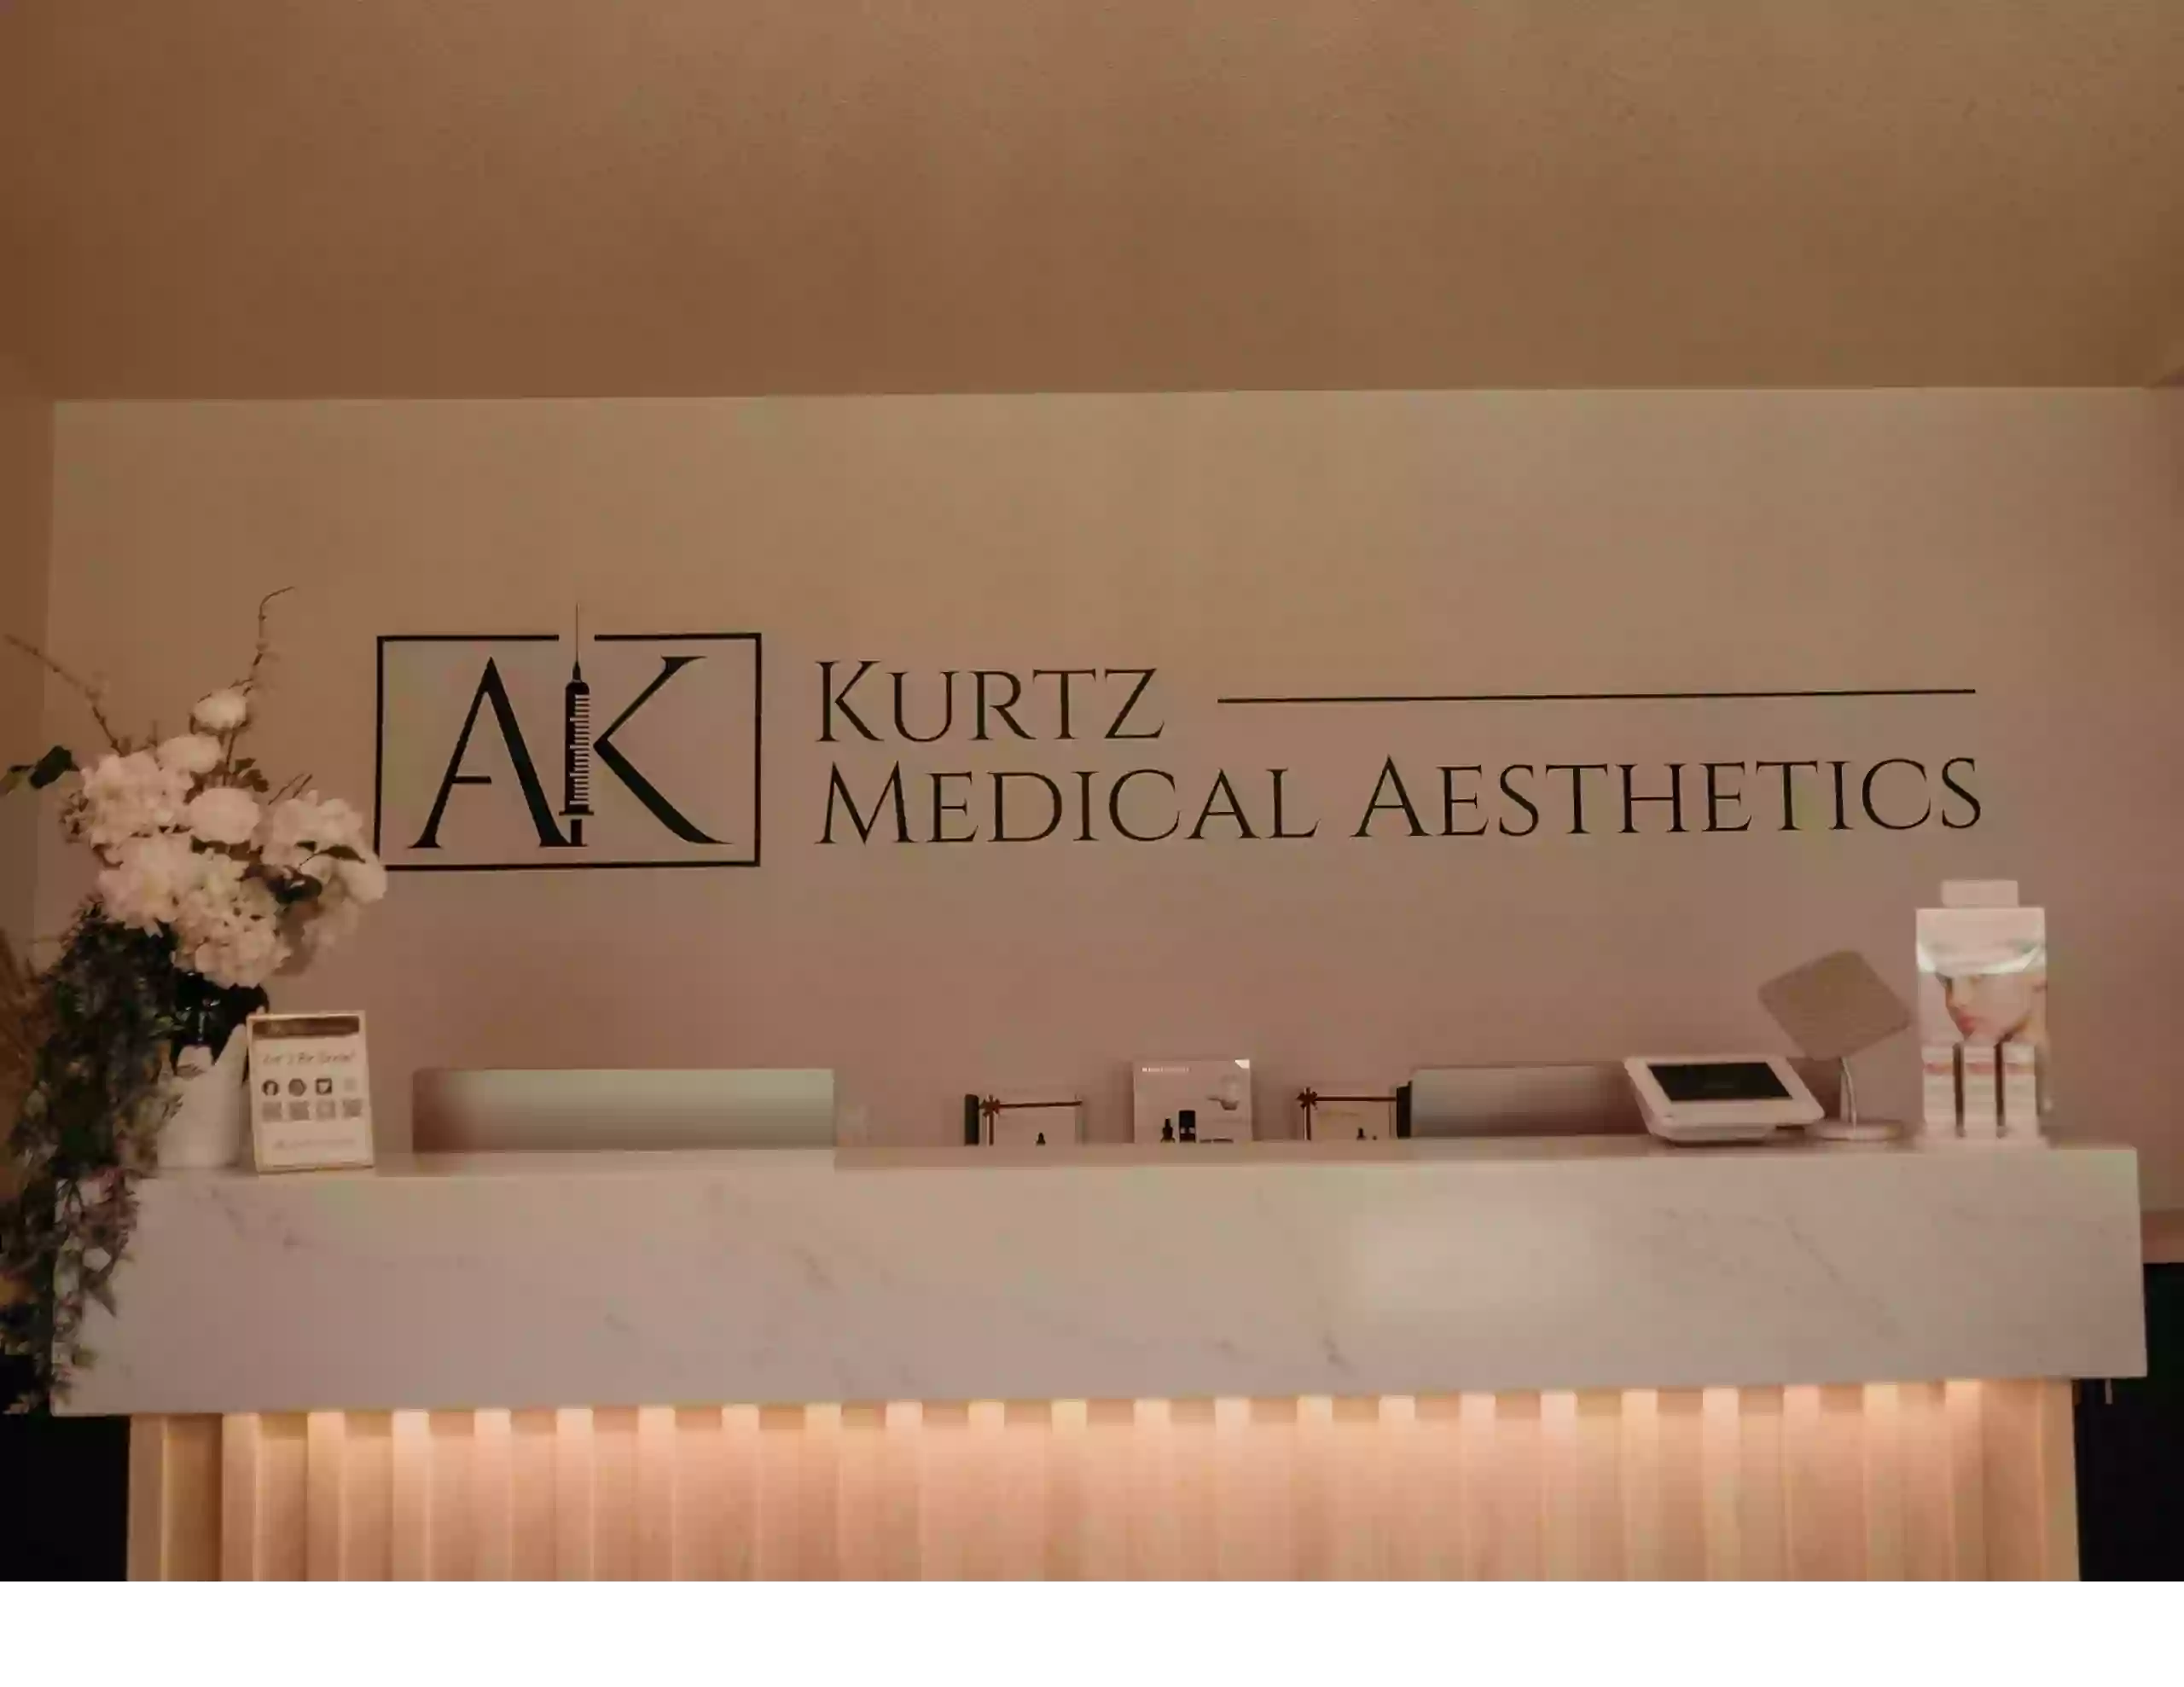 Kurtz Medical Aesthetics